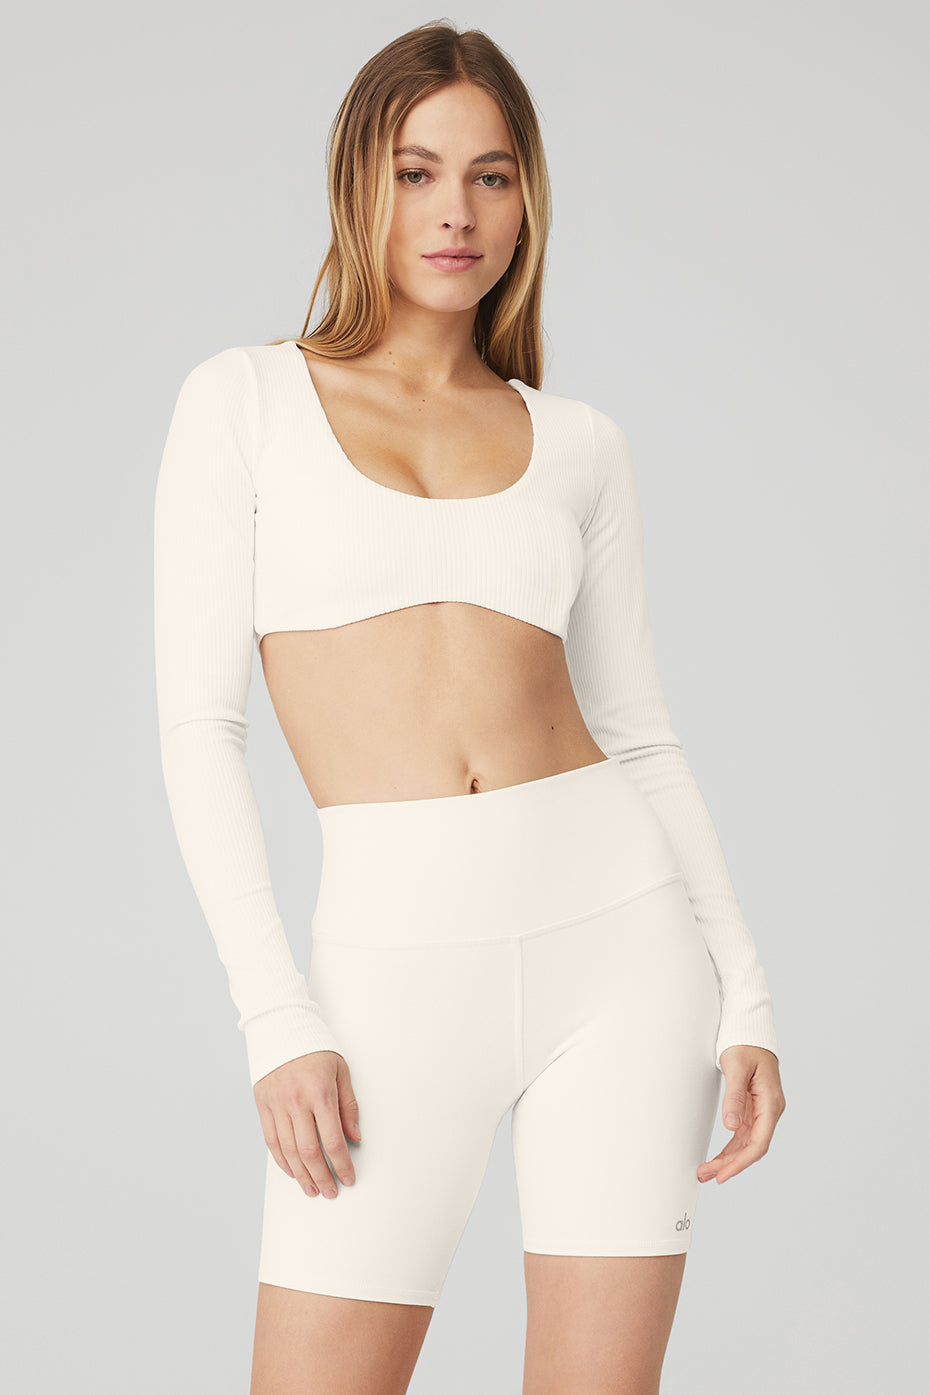 Soma Longline Yoga Bra, White/Ivory, size XL